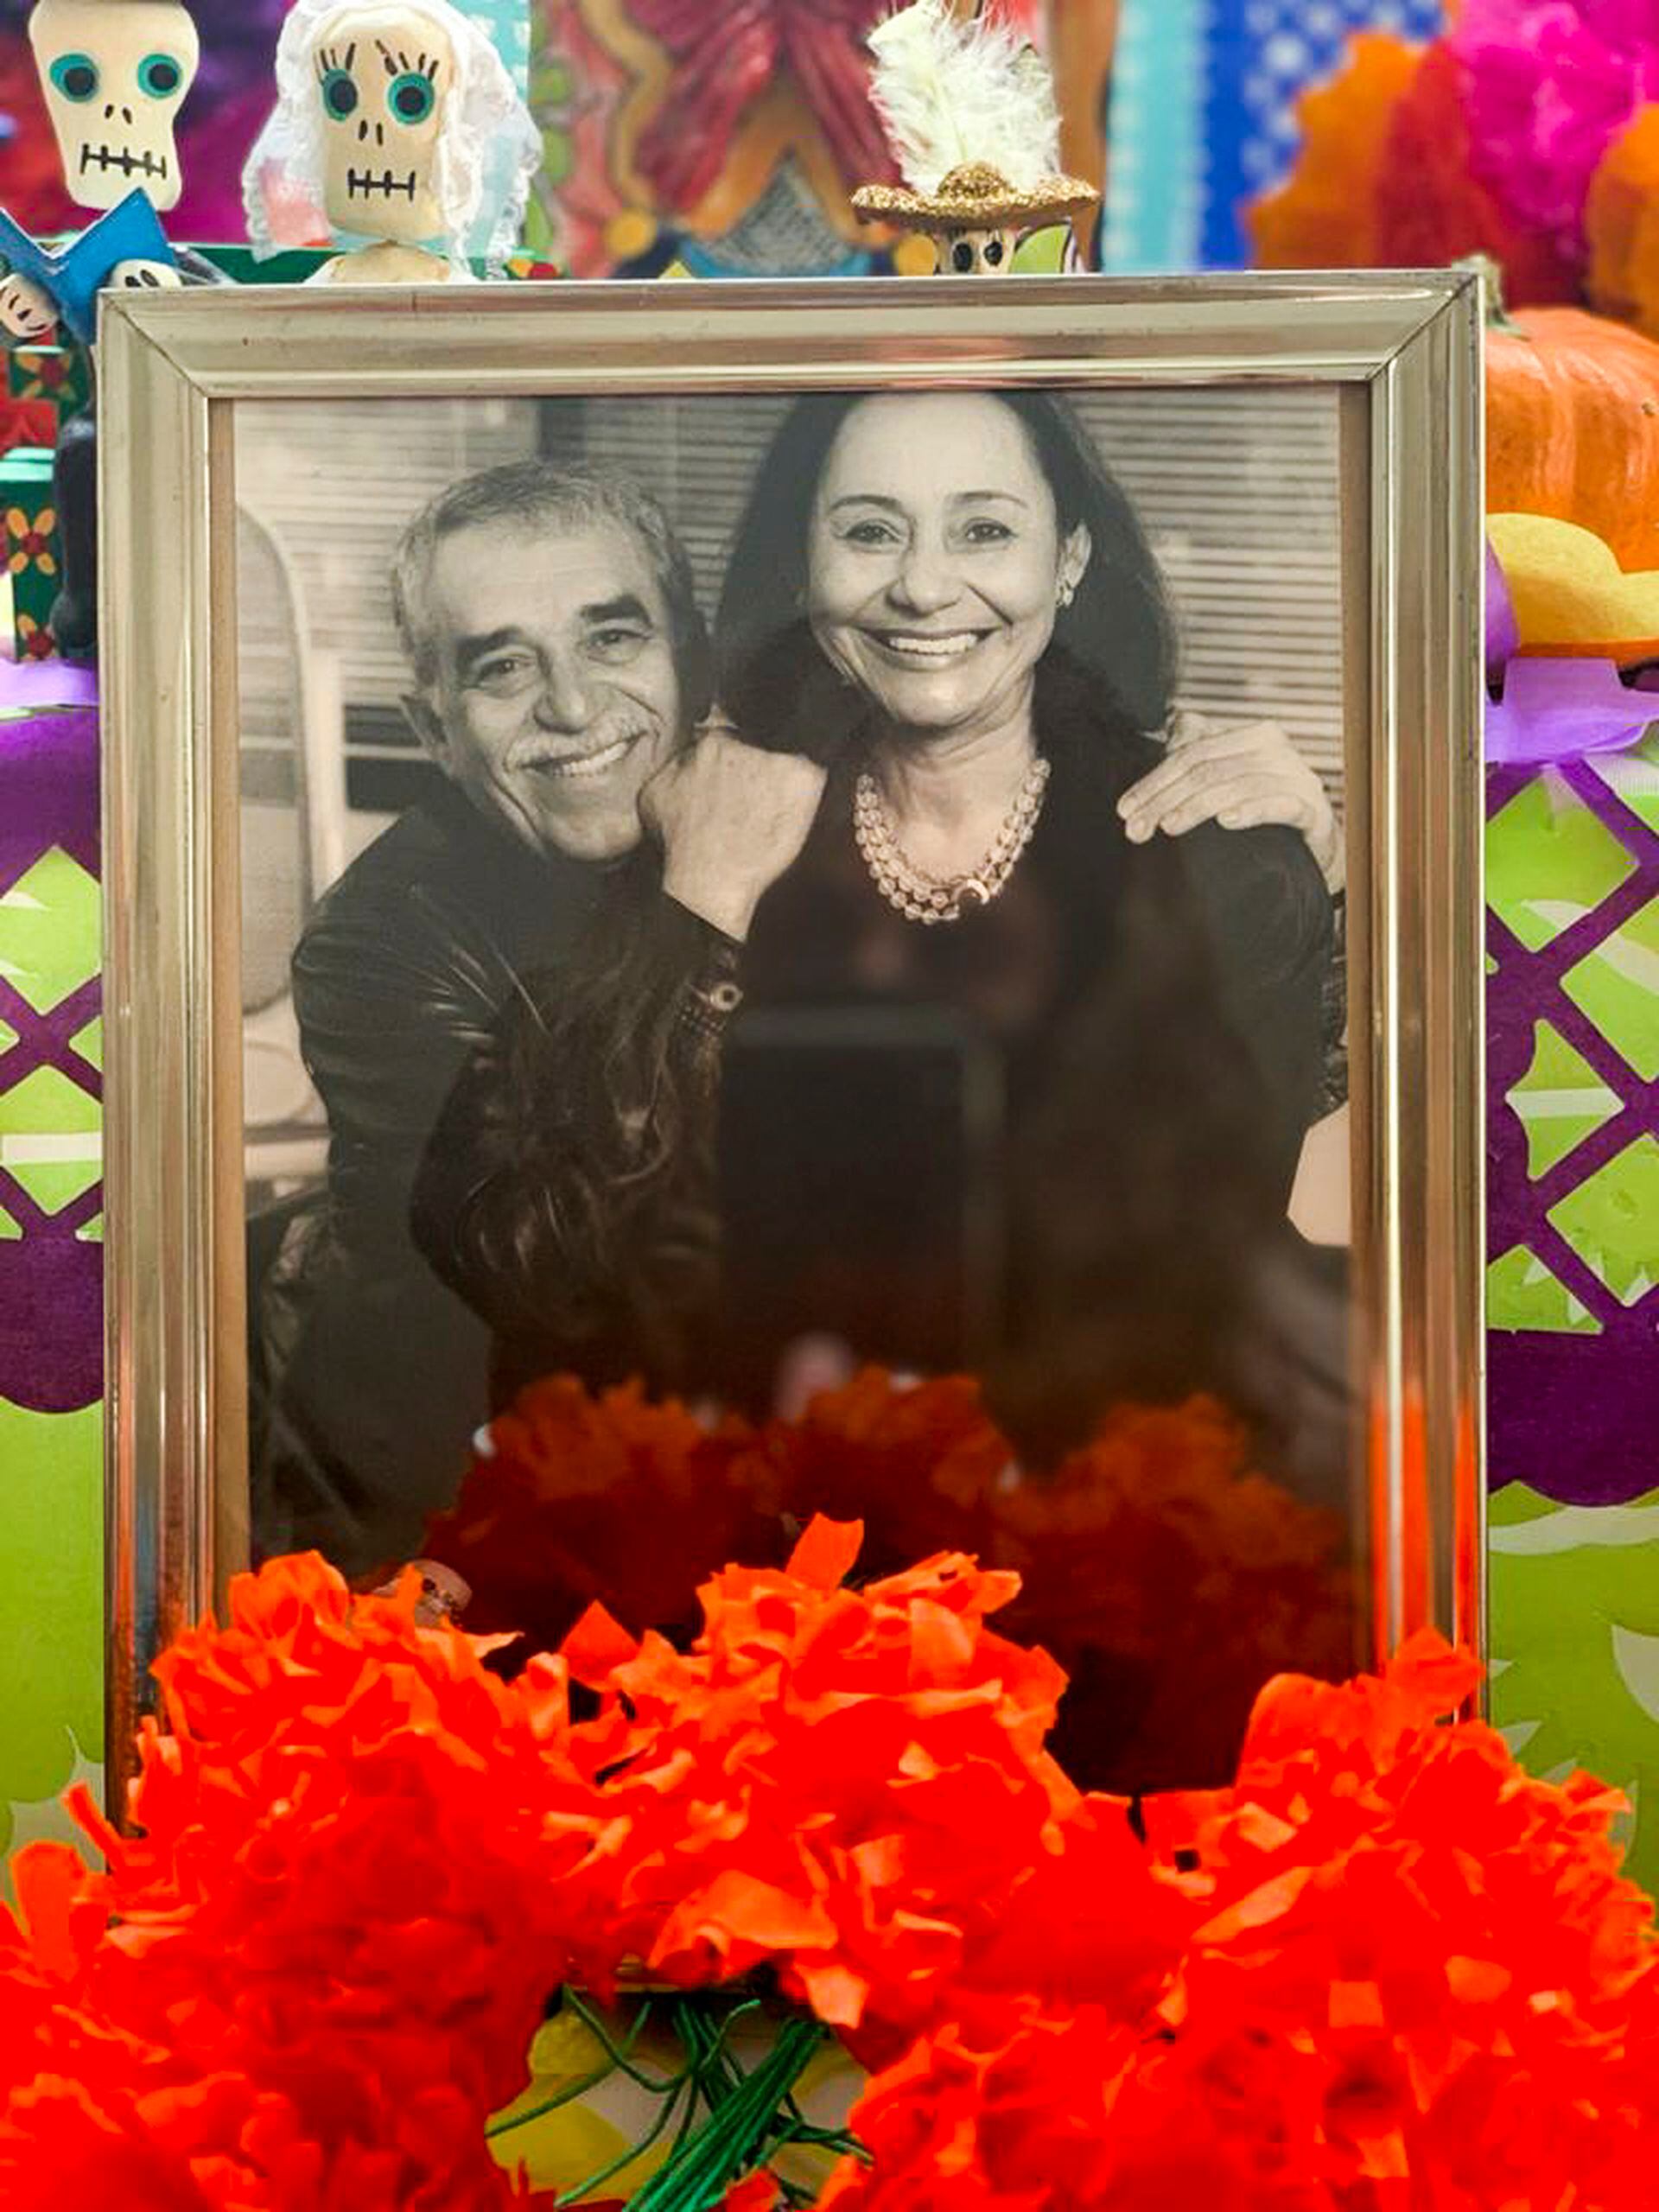 Un portarretratos del matrimonio García Márquez muestra a Gabo y Mercedes sonrientes, escoltados por calaveras, ofrendas y velas, a pocos días de la tradicional celebración de Día de Muertos